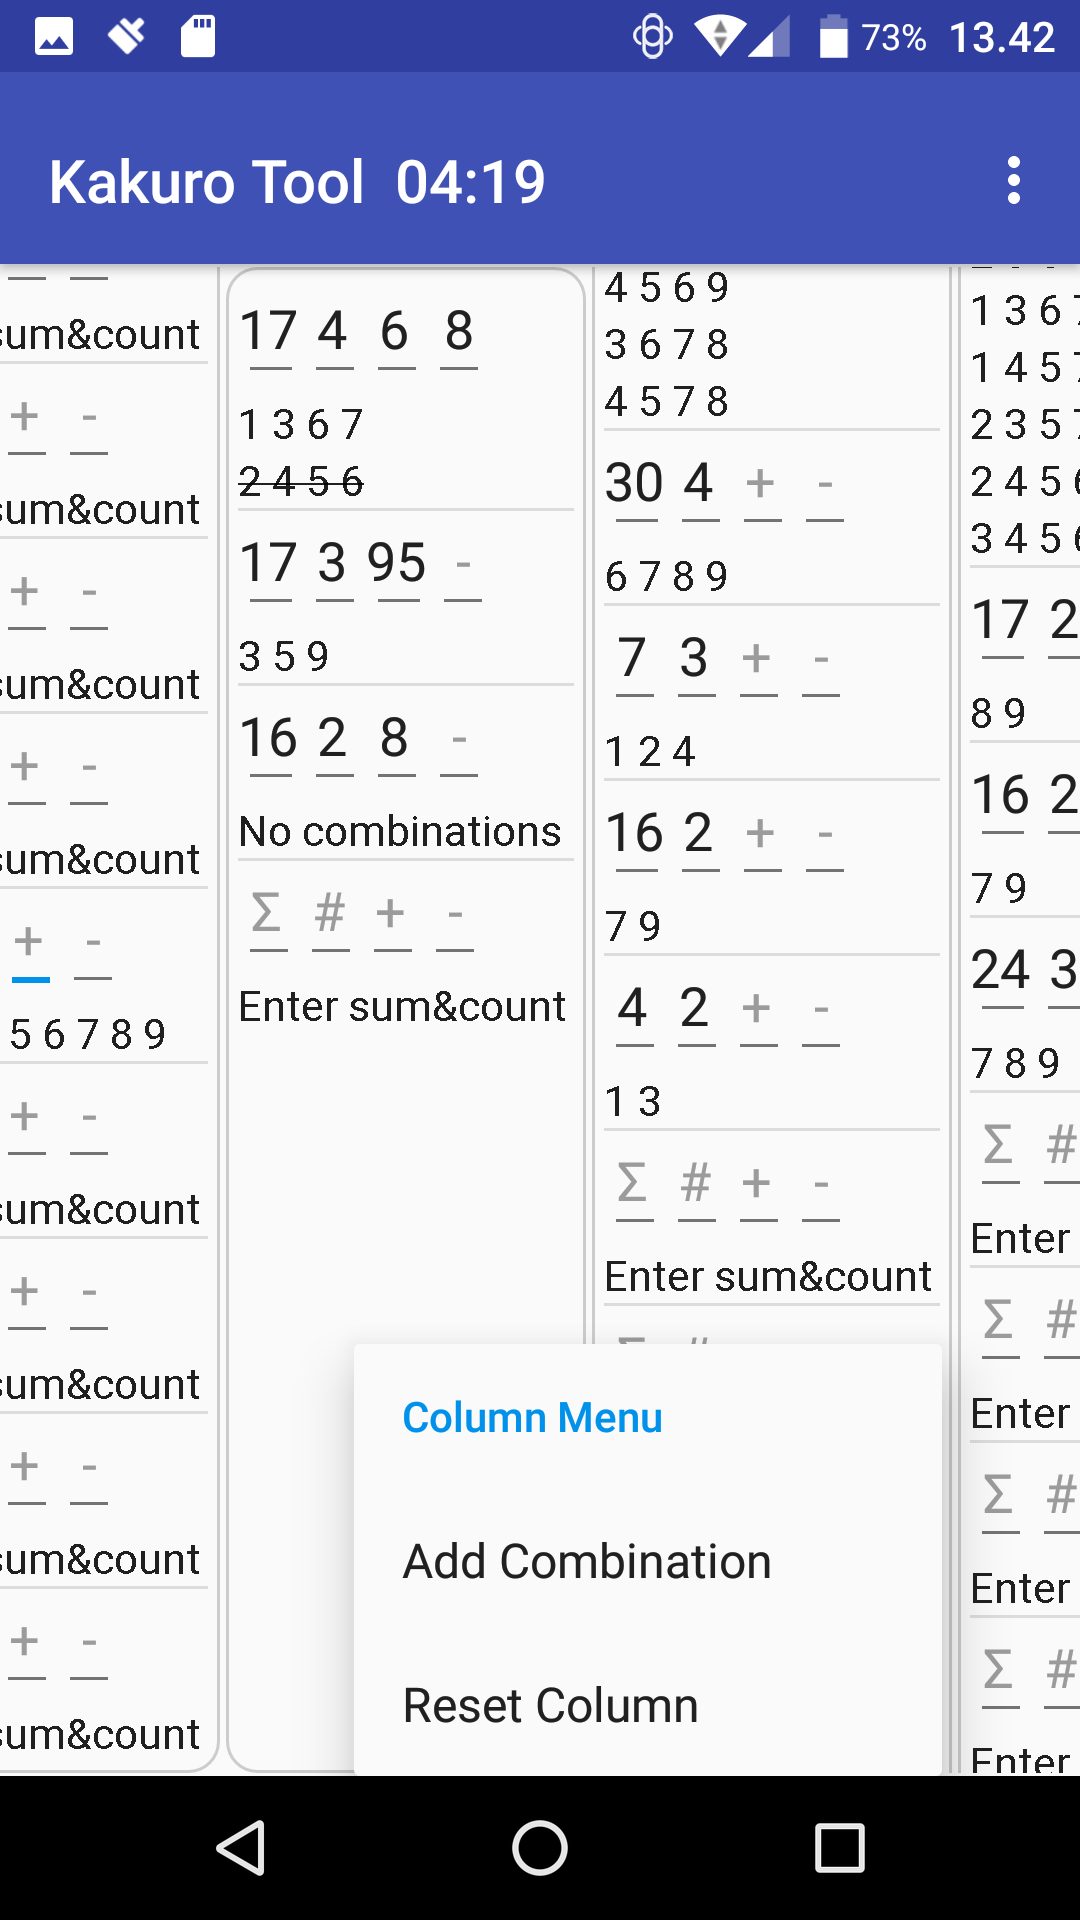 screenshots/Context-menu-Column-B.png: Not found